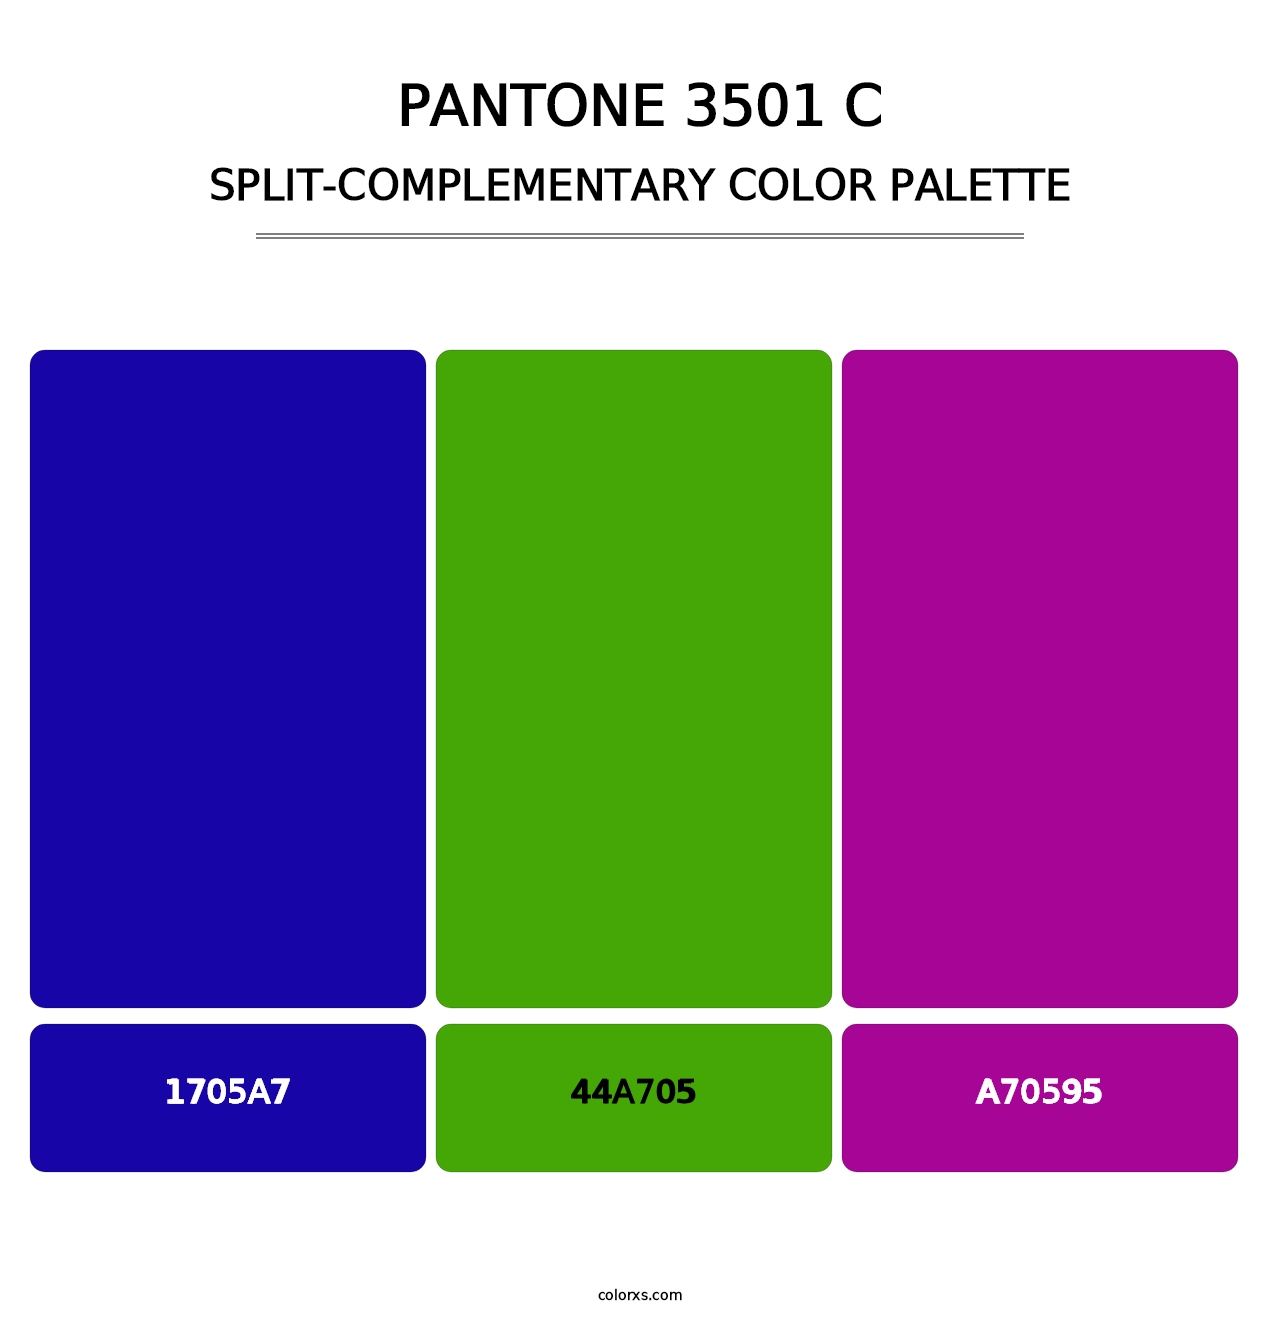 PANTONE 3501 C - Split-Complementary Color Palette